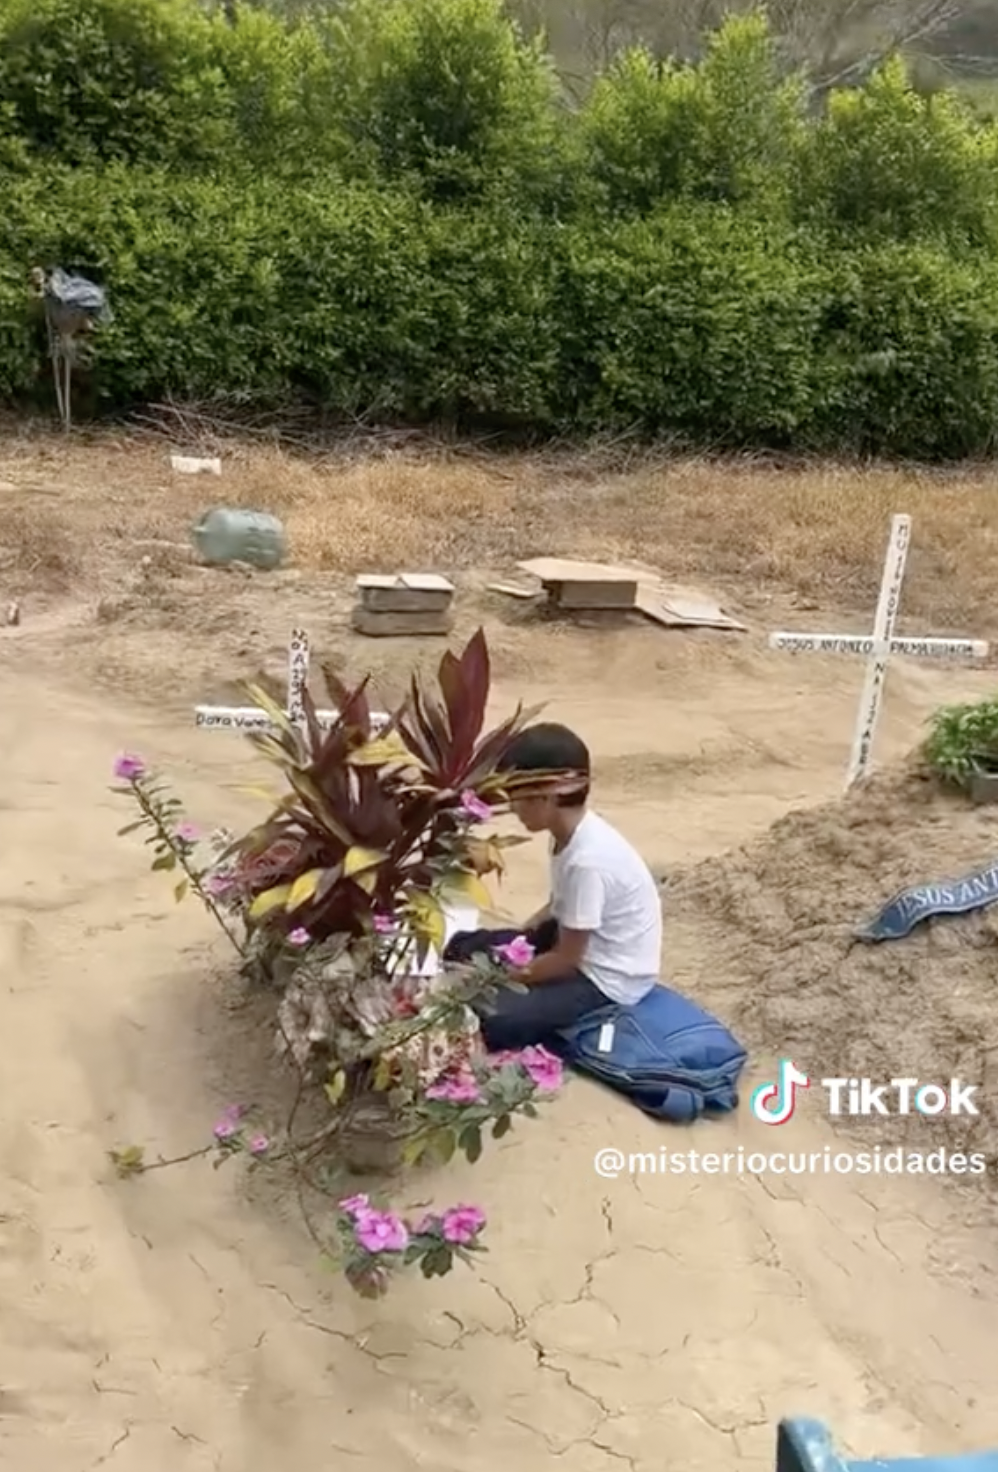 Kike at his mom's grave. | Source: tiktok.com/@misteriocuriosidades